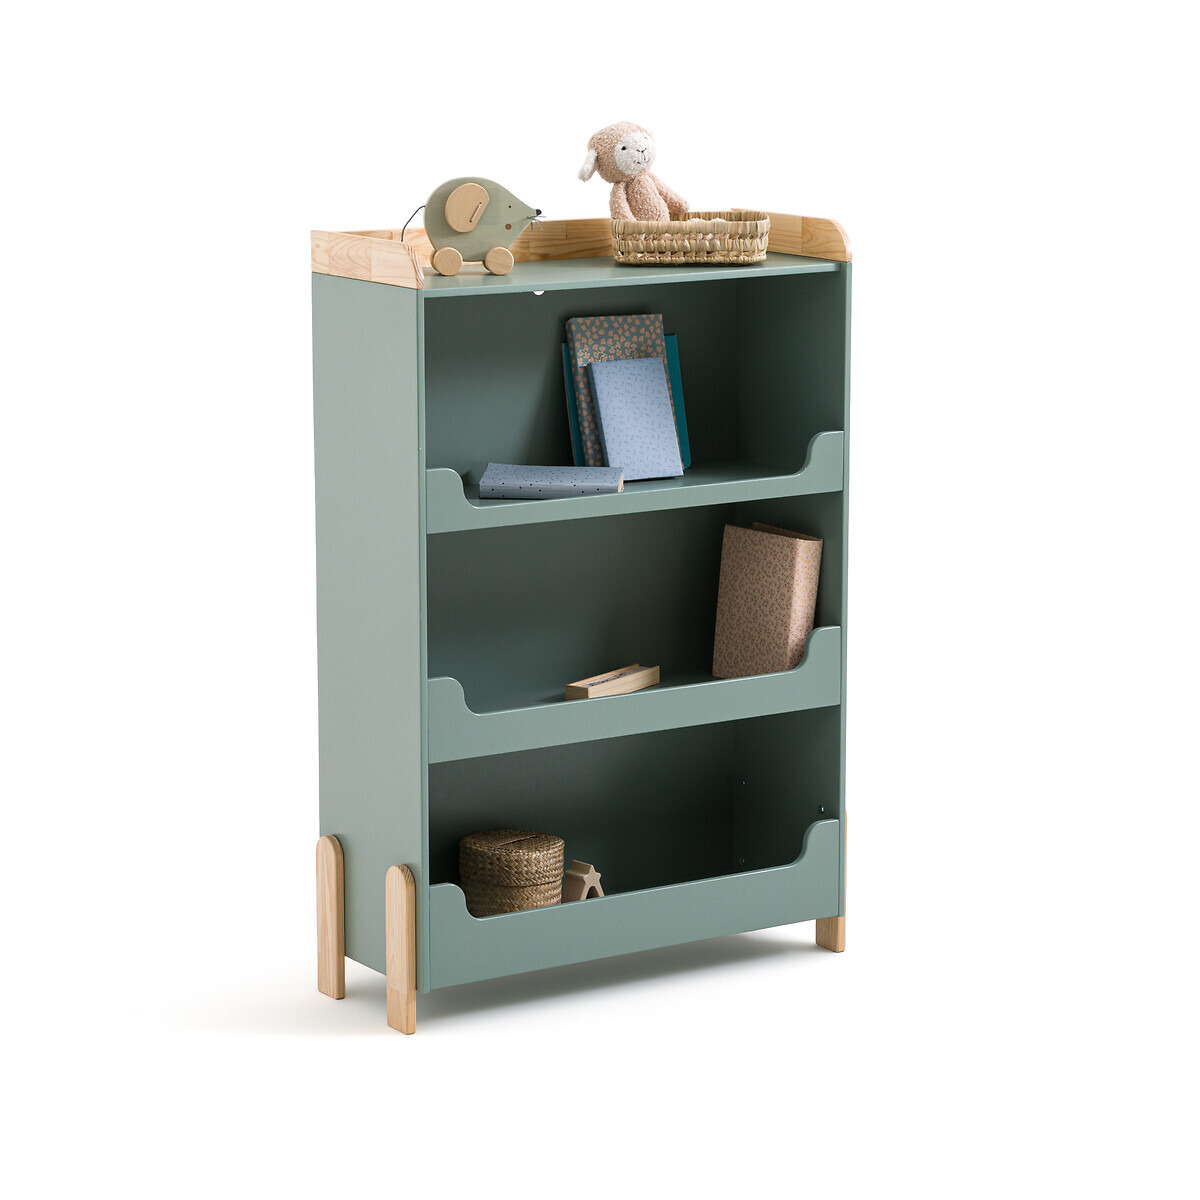 Arturo Child's Pine Bookcase - image 1